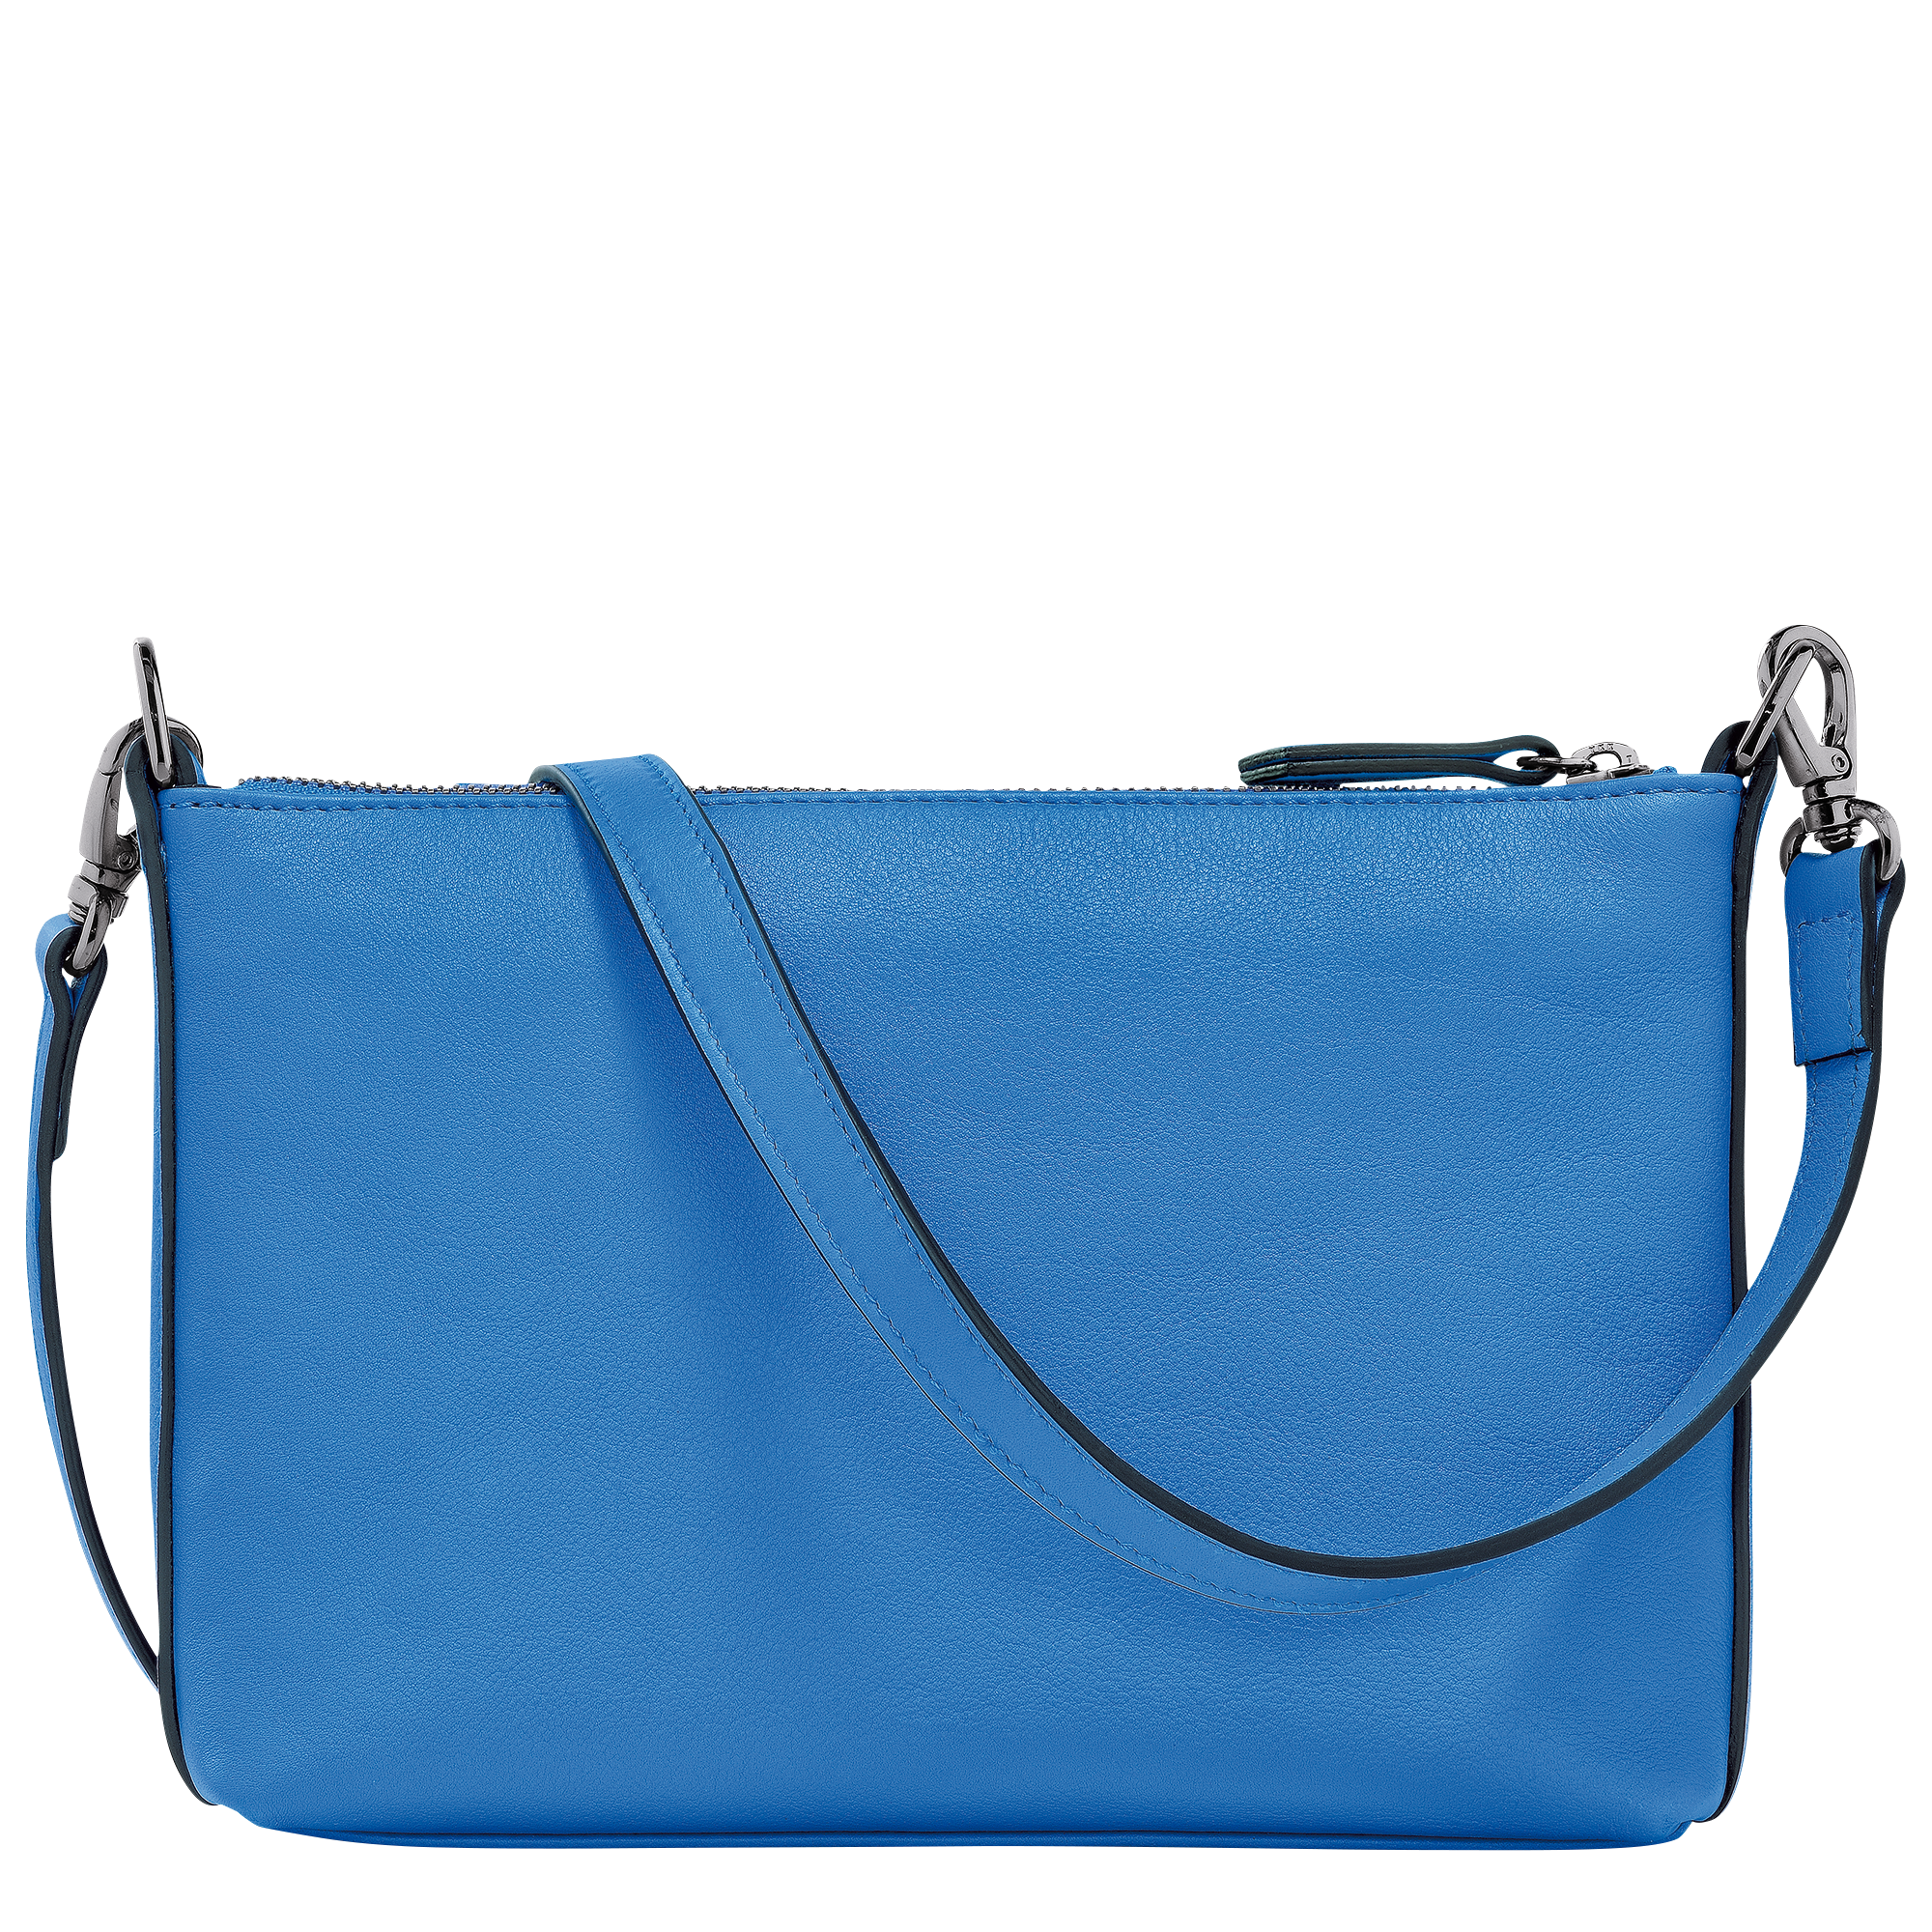 Longchamp 3D 斜背袋 S, 鈷藍